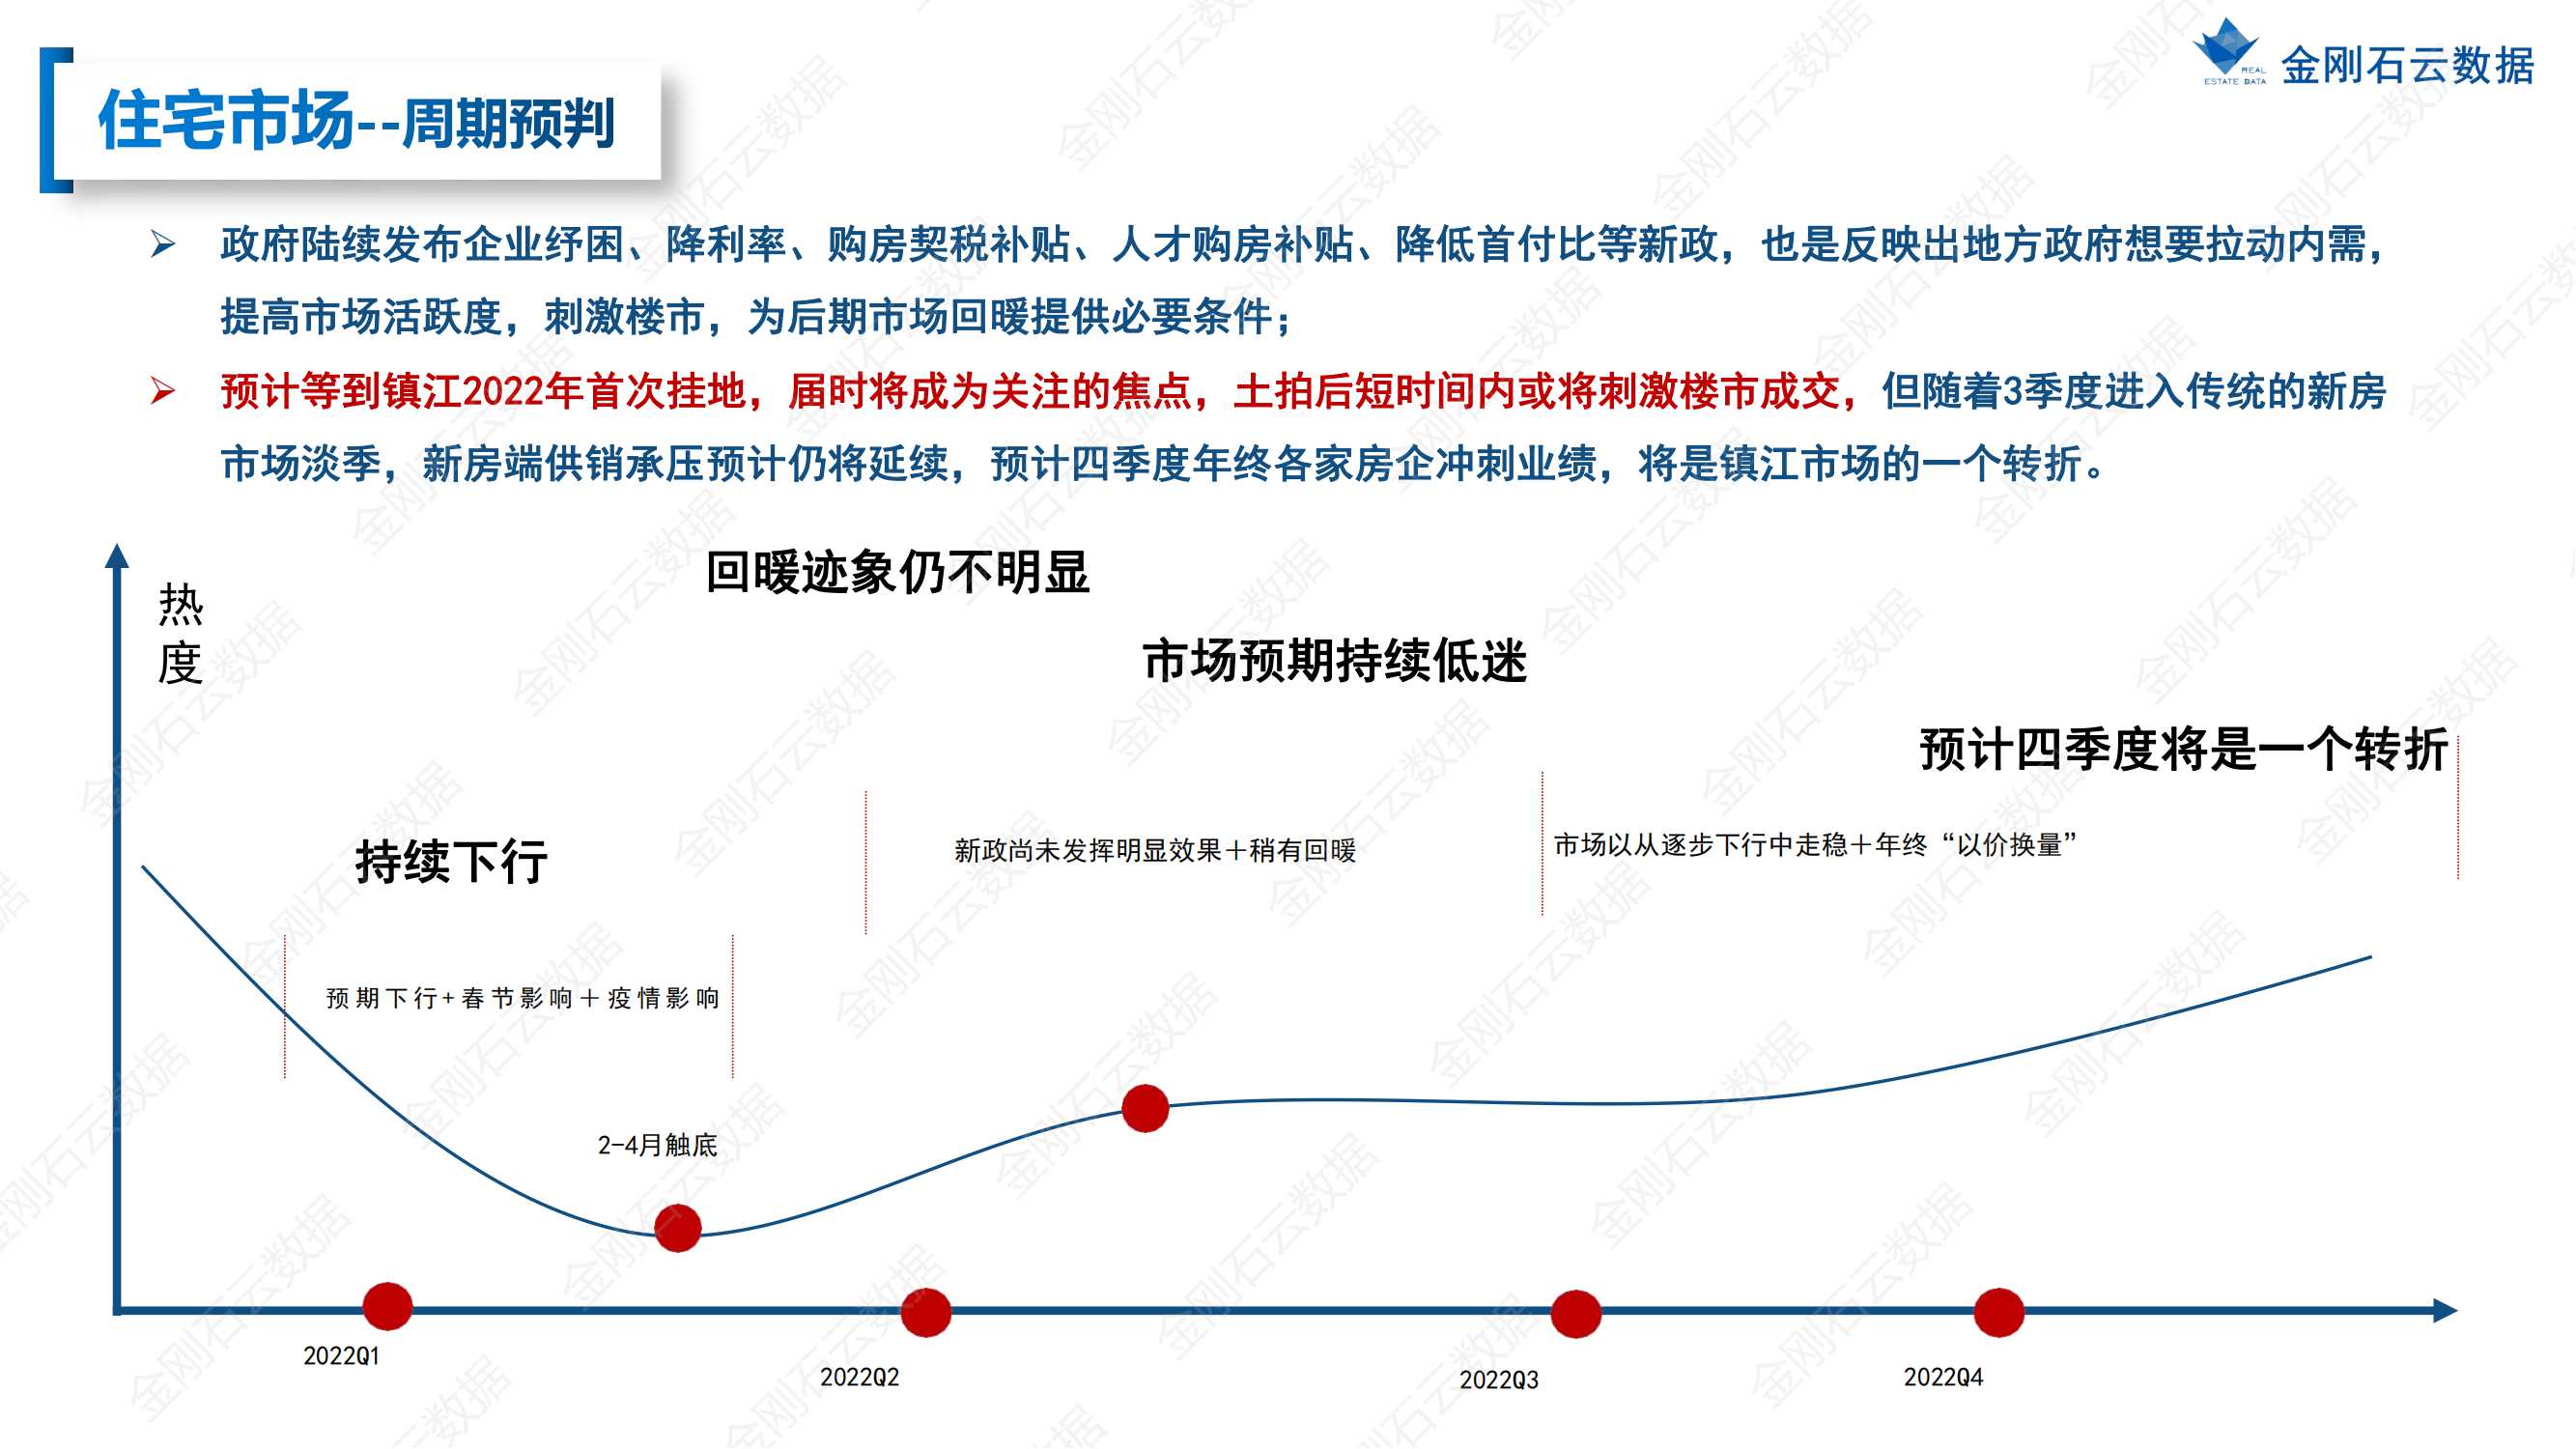 【江苏镇江】2022年上半年度市场报告(图18)